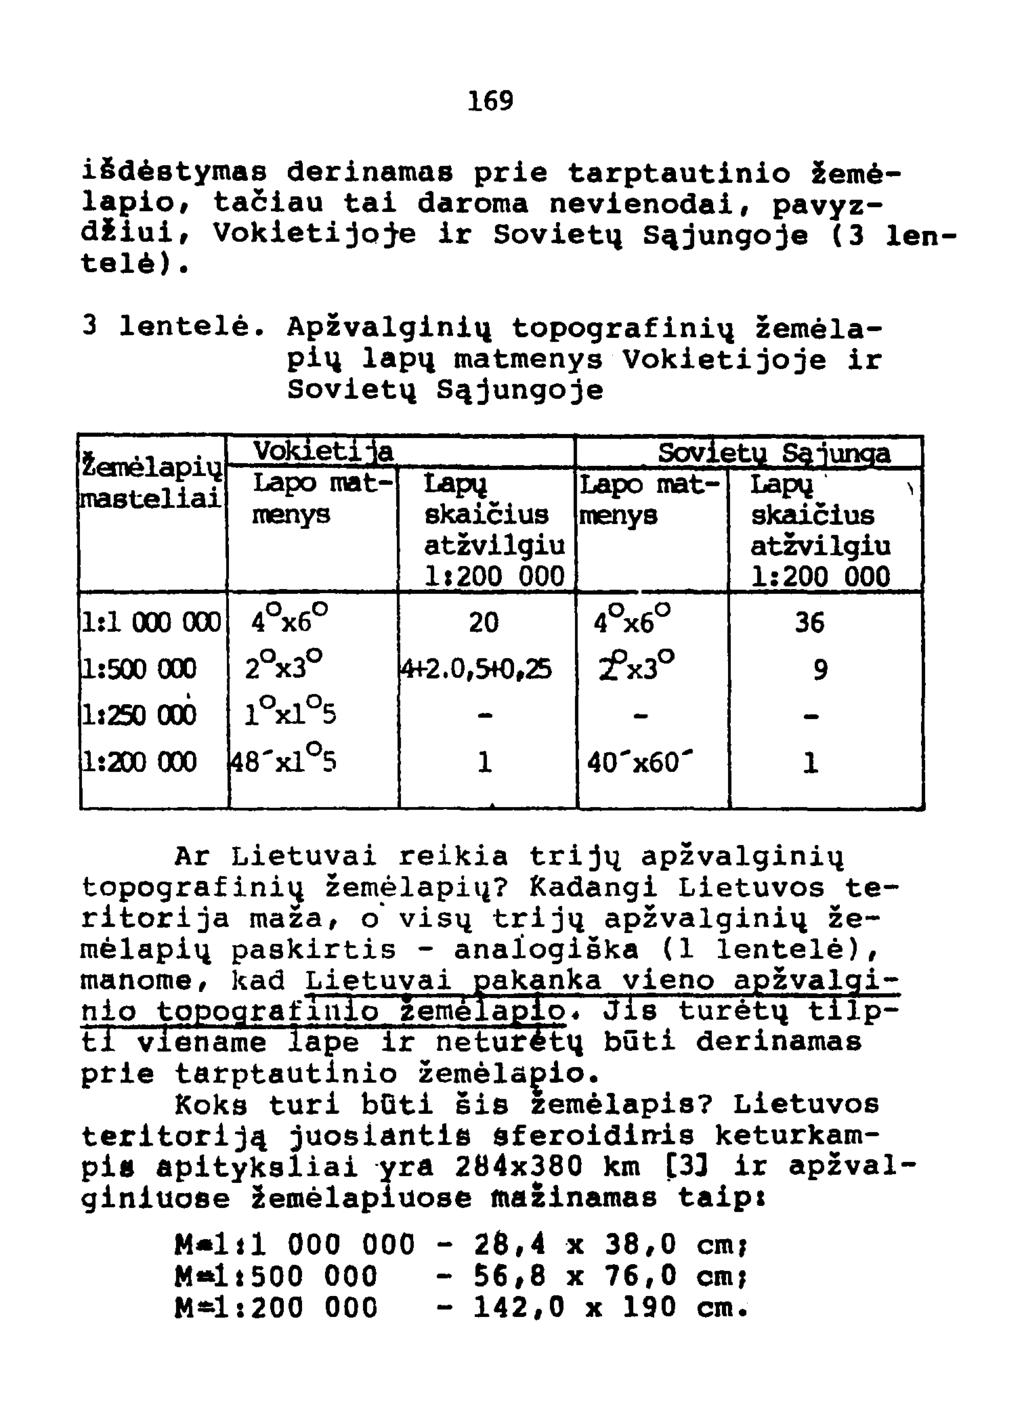 169 iidestymas derinamas prie tarptautinio zemelapio, taciau tai daroma nevienodai, pavyzdiiui, Vokietijoje ir Sovietq s~jungoje (3 lentele). 3 lentele.